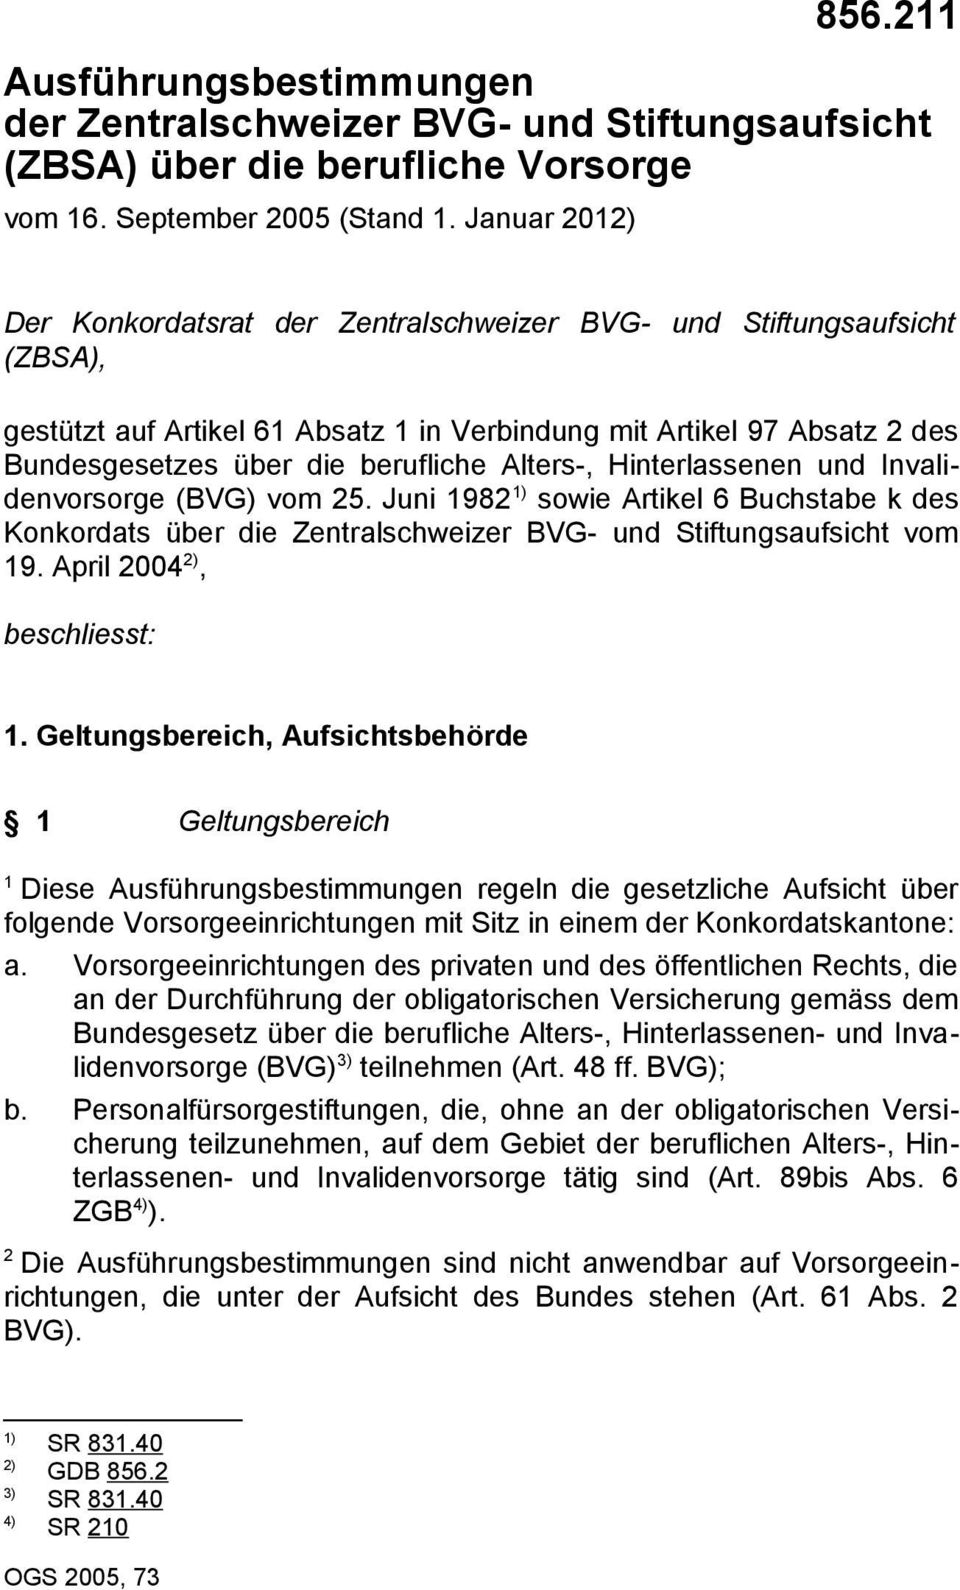 Hinterlassenen und Invalidenvorsorge (BVG) vom 5. Juni 98 ) sowie Artikel 6 Buchstabe k des Konkordats über die Zentralschweizer BVG- und Stiftungsaufsicht vom 9. April 004 ), beschliesst:.